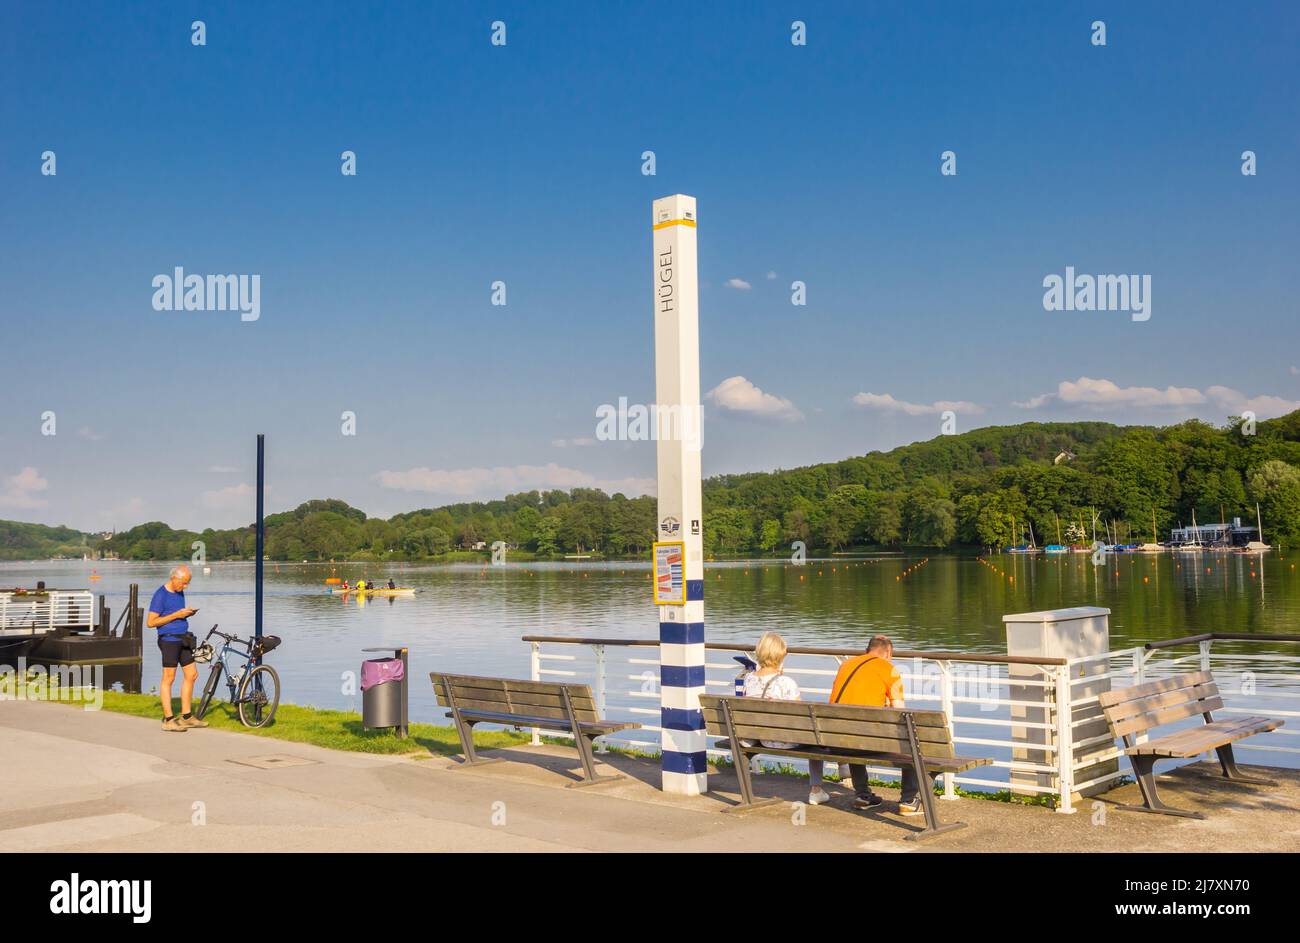 Menschen, die sich auf einer Bank am Bladeney-See in Bredeney, Essen, entspannen Stockfoto